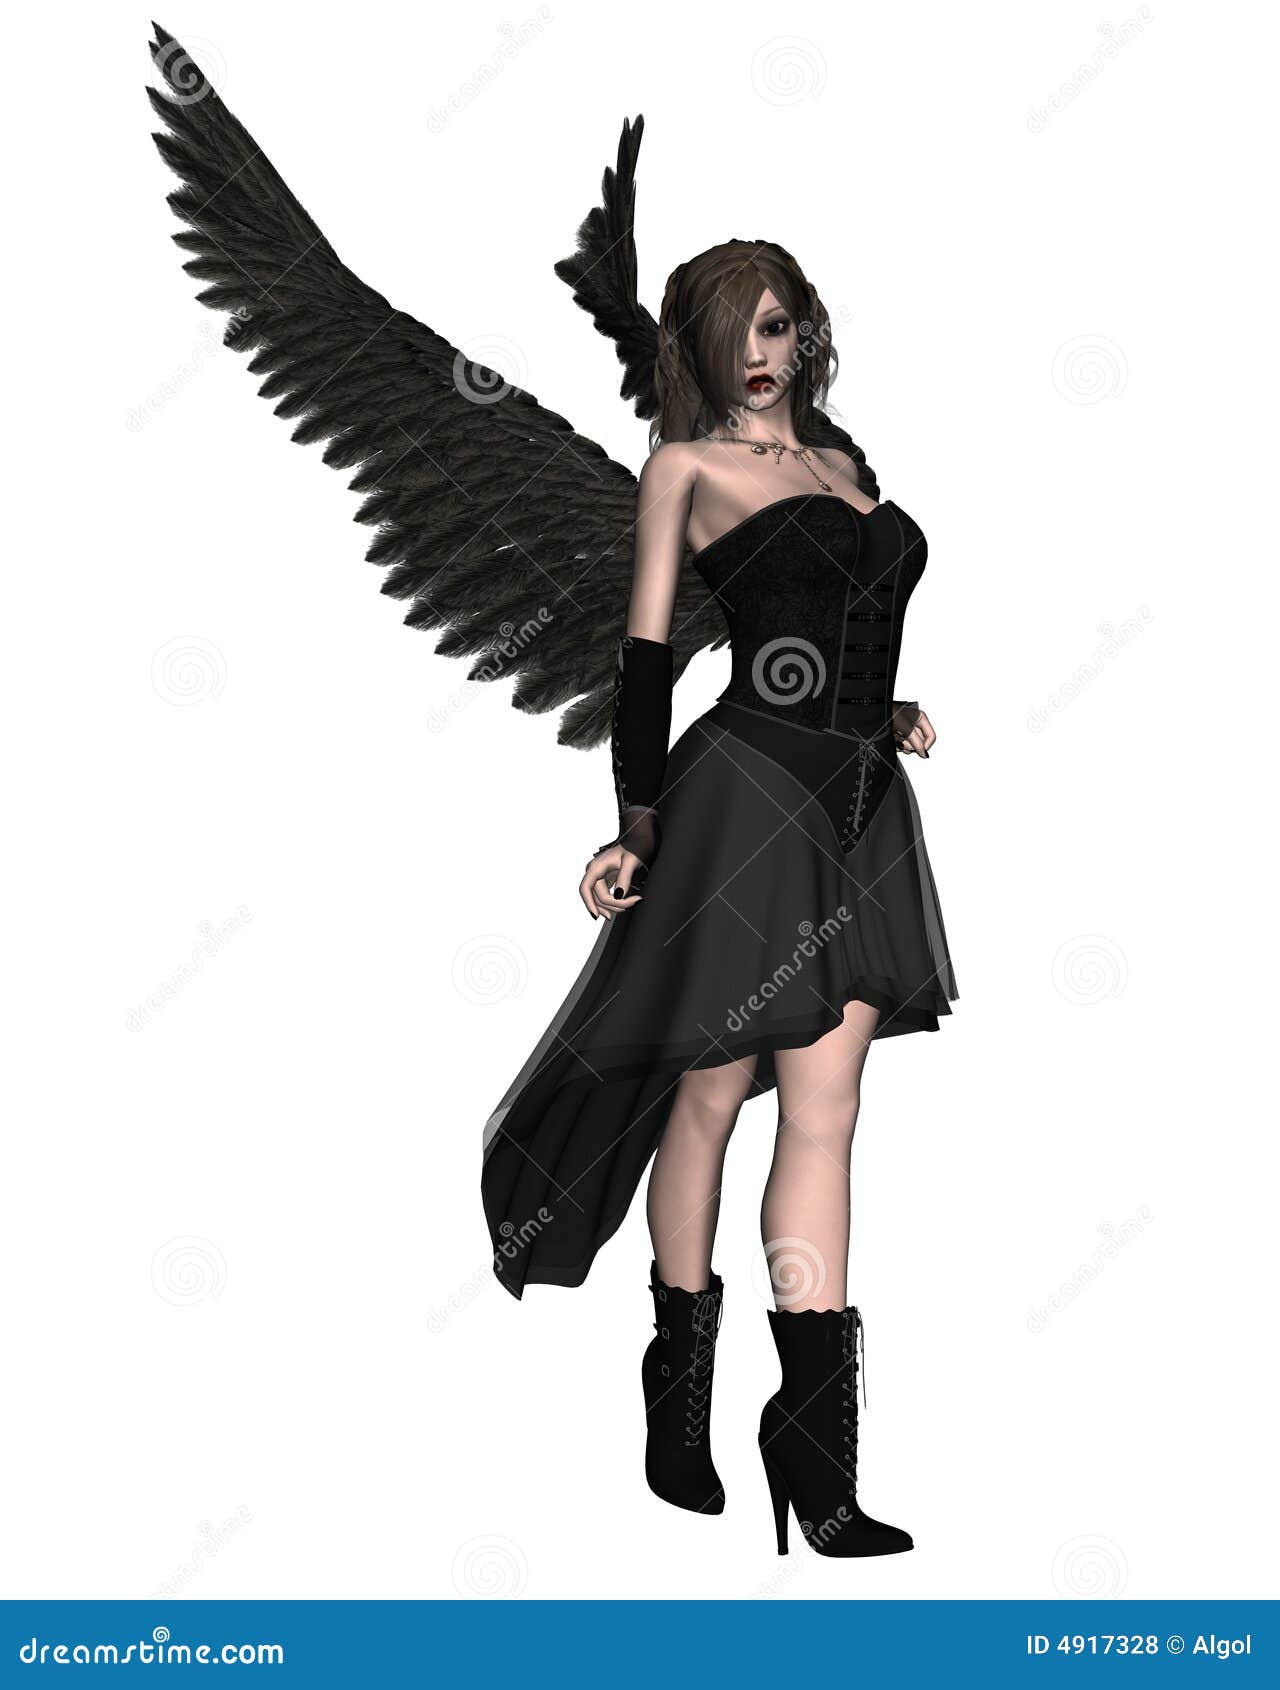 Gothic Dark Angel WFT-62 Winged Warrior with Dragon Pistol Pink Black 11.25" H 